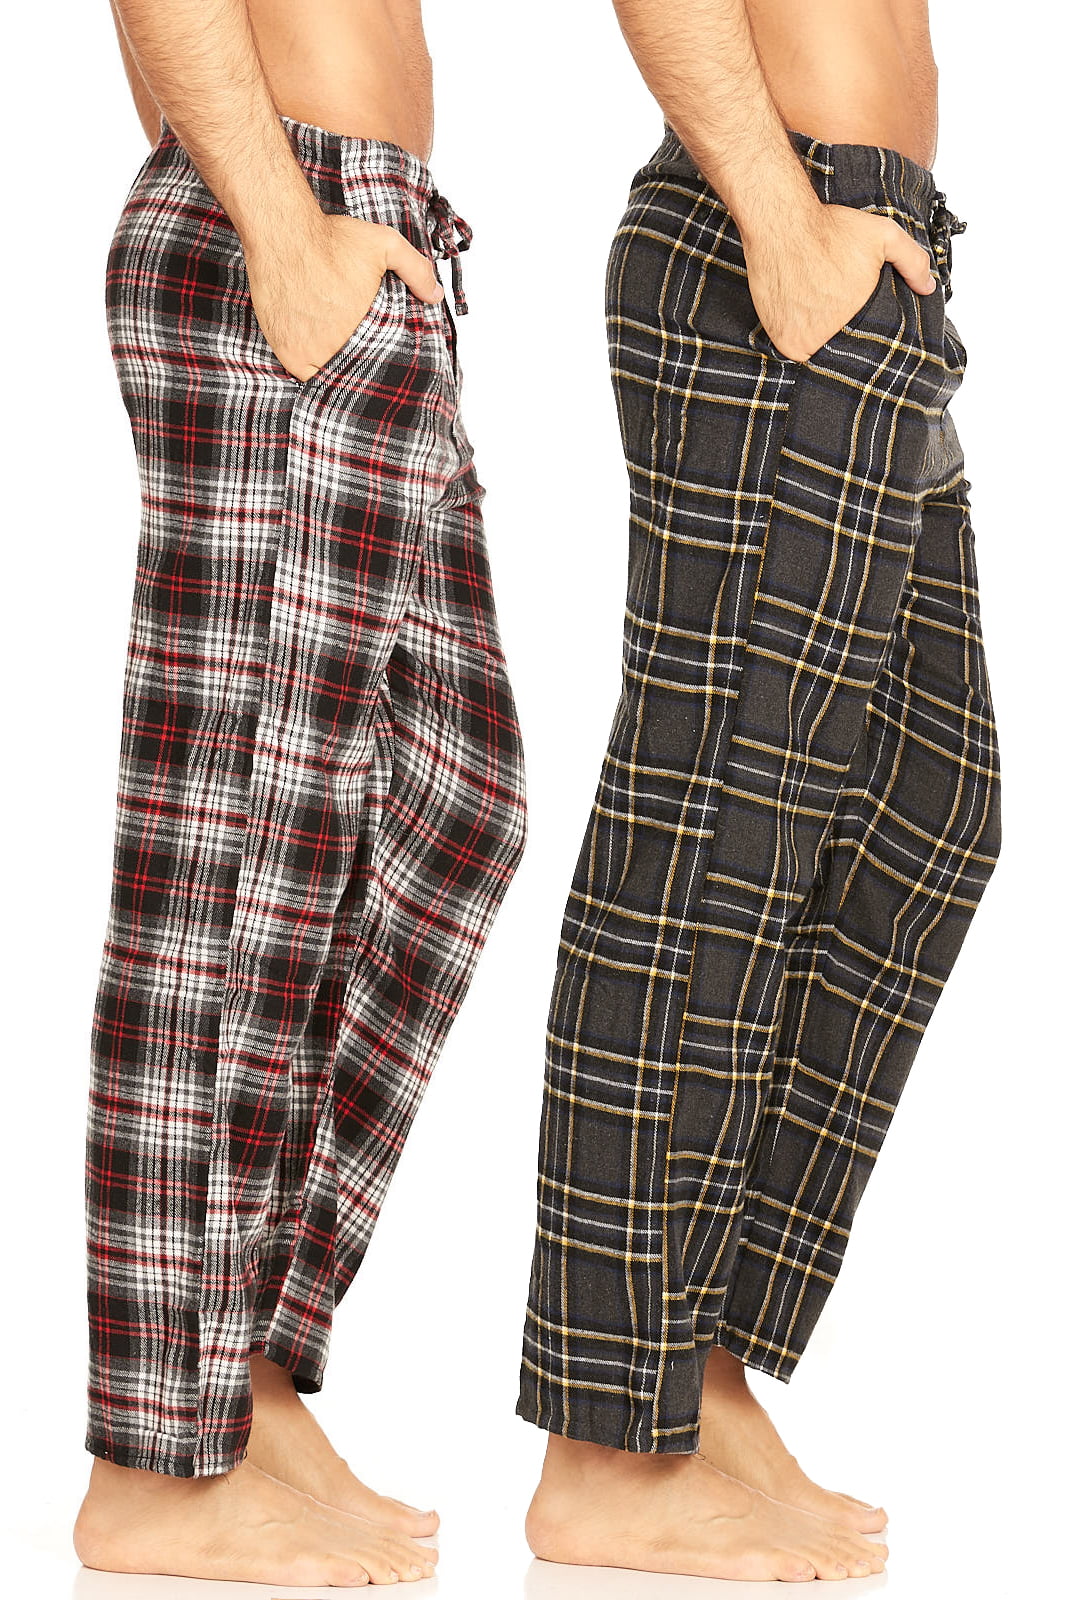 daresay-men-s-cotton-super-soft-flannel-plaid-pajama-pants-lounge